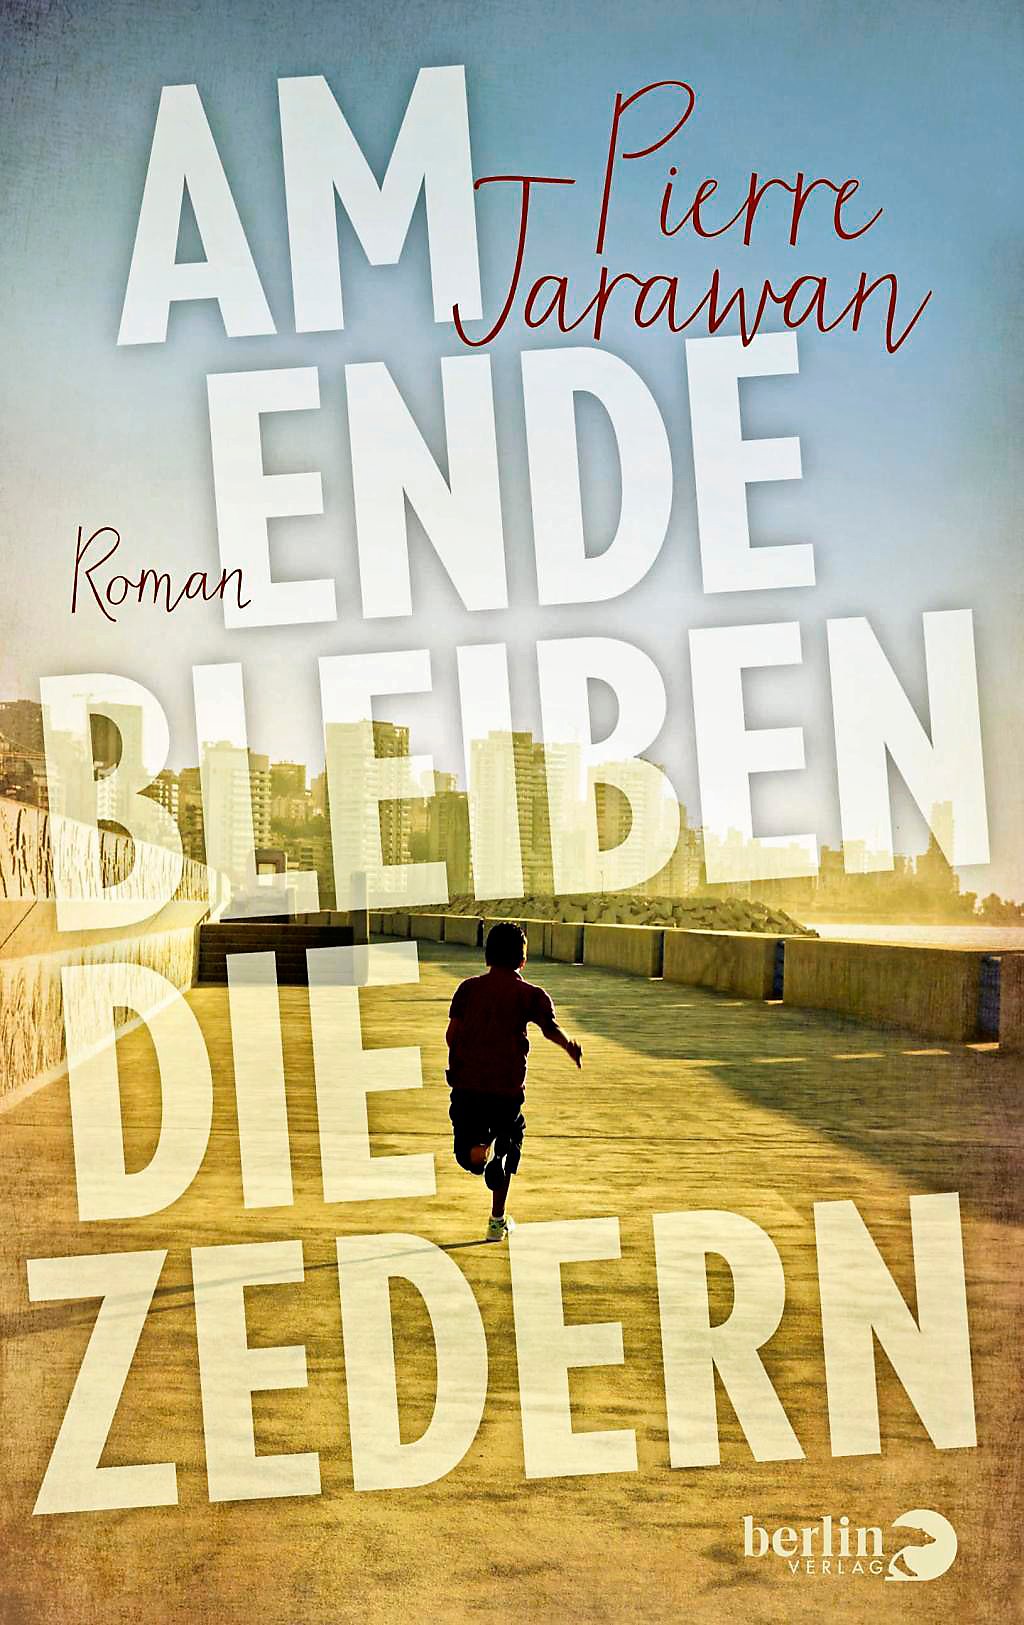 Buchcover Pierre Jarawans "Am Ende bleiben die Zedern" im Berlin Verlag